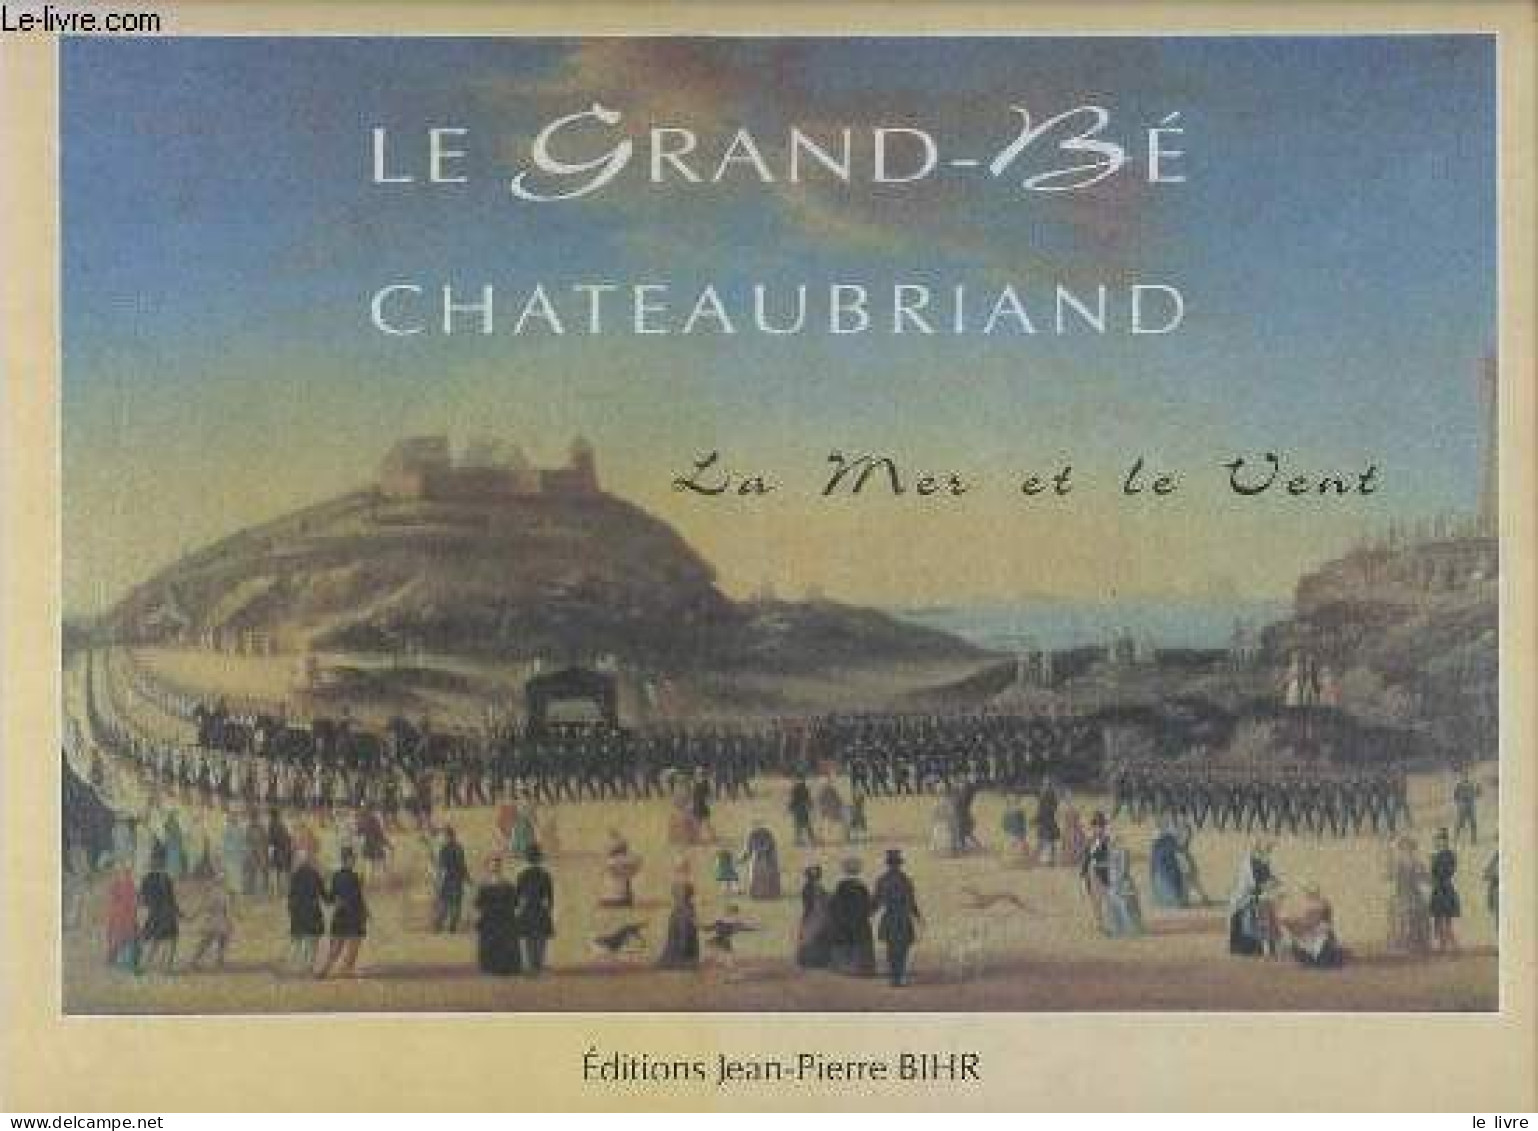 Le Grand-Bé Chateaubriand - La Mer Et Le Vent. - Heudré Bernard - 1995 - Bretagne